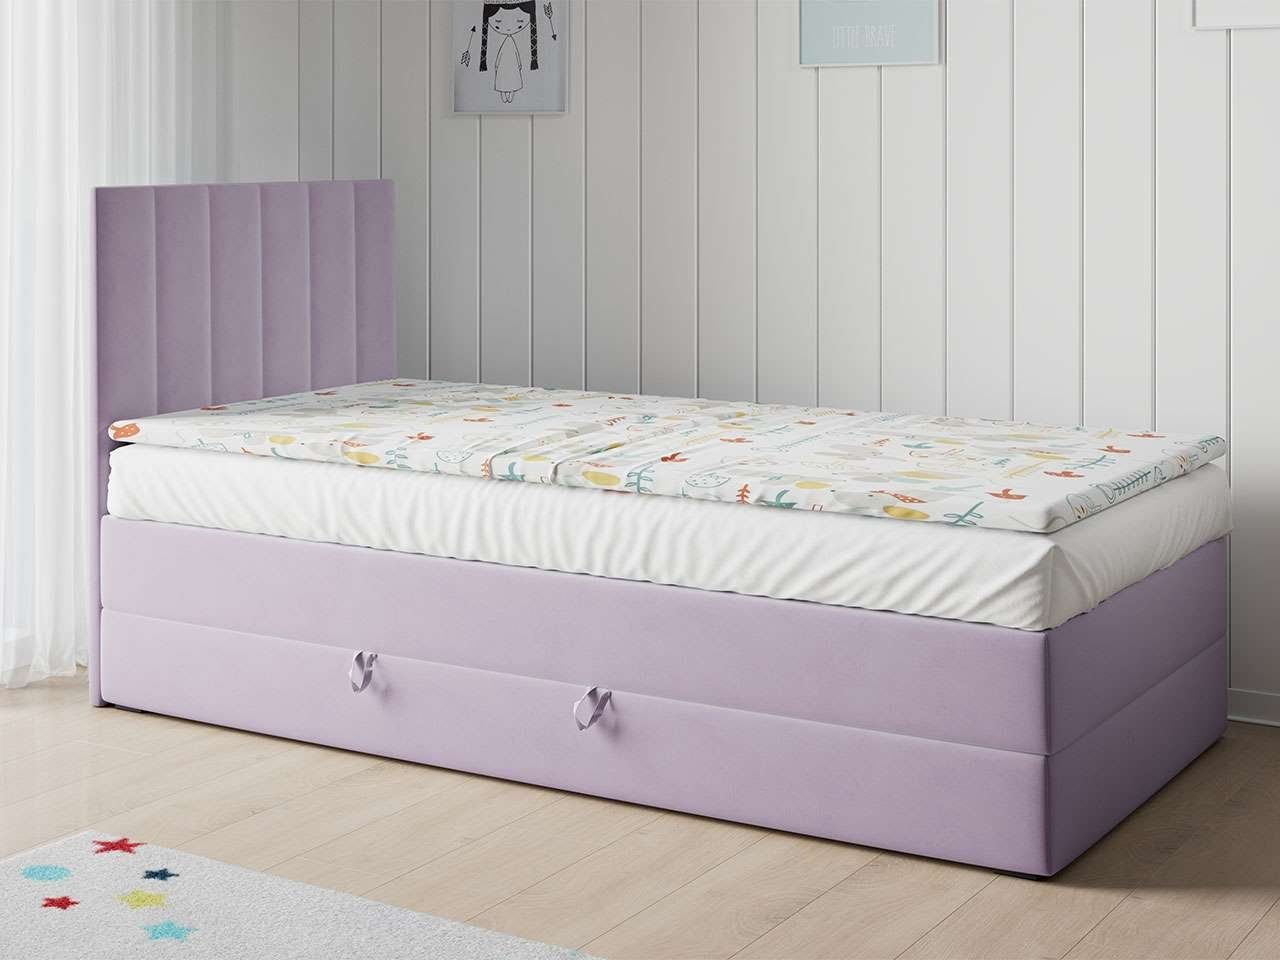 1, LAURA MÖBEL Kinderzimmer für Violett 90x200 MKS und - Jugendzimmer Kinderbett Polsterbetten